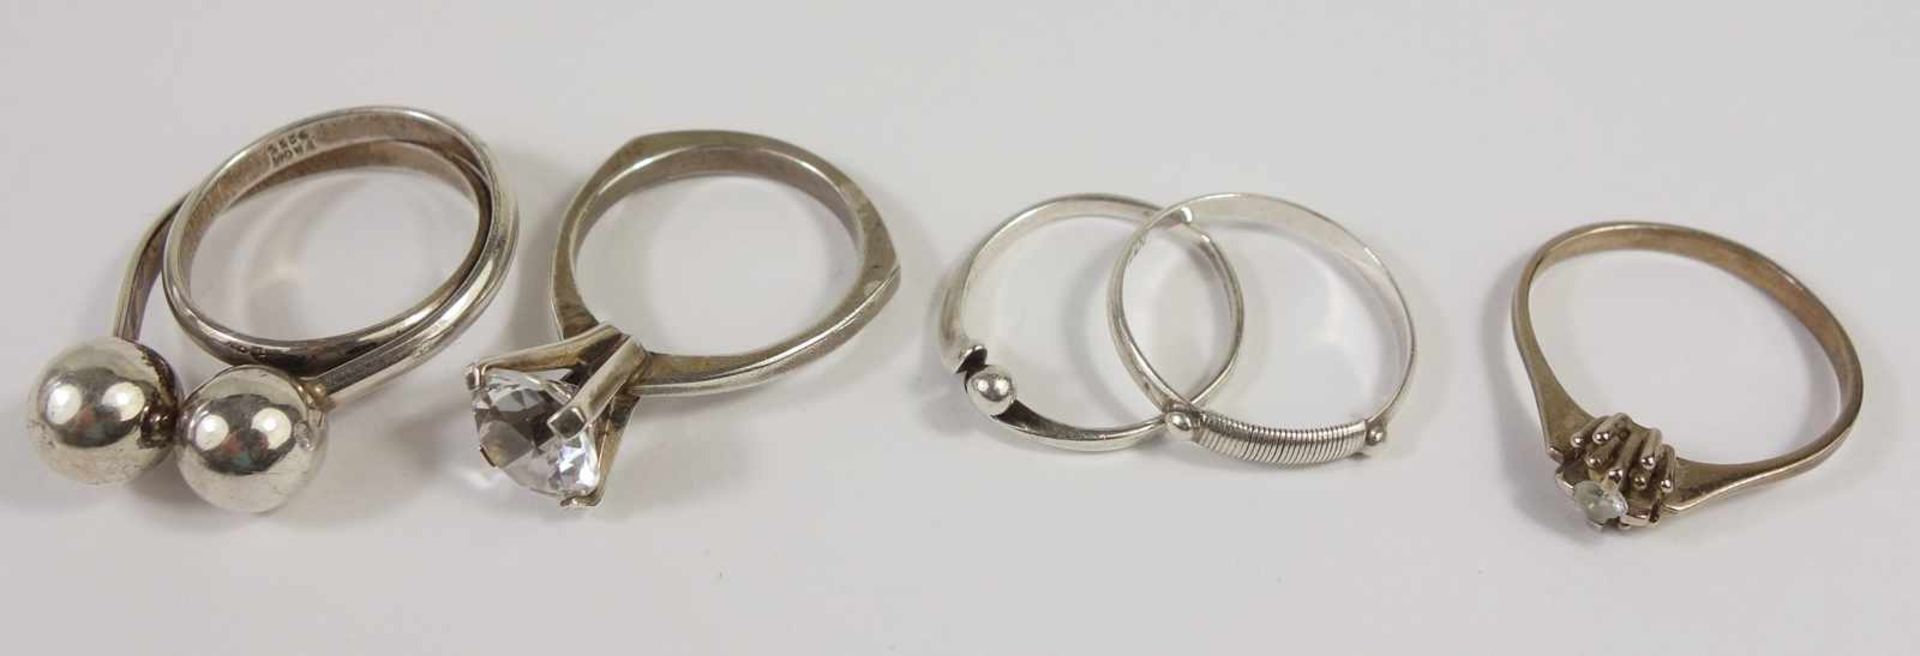 4 silberne Ringe und ein Ring, 333er Gold, Silber-Gew.10,71g, unterschiedliche Arten und Größen, U.